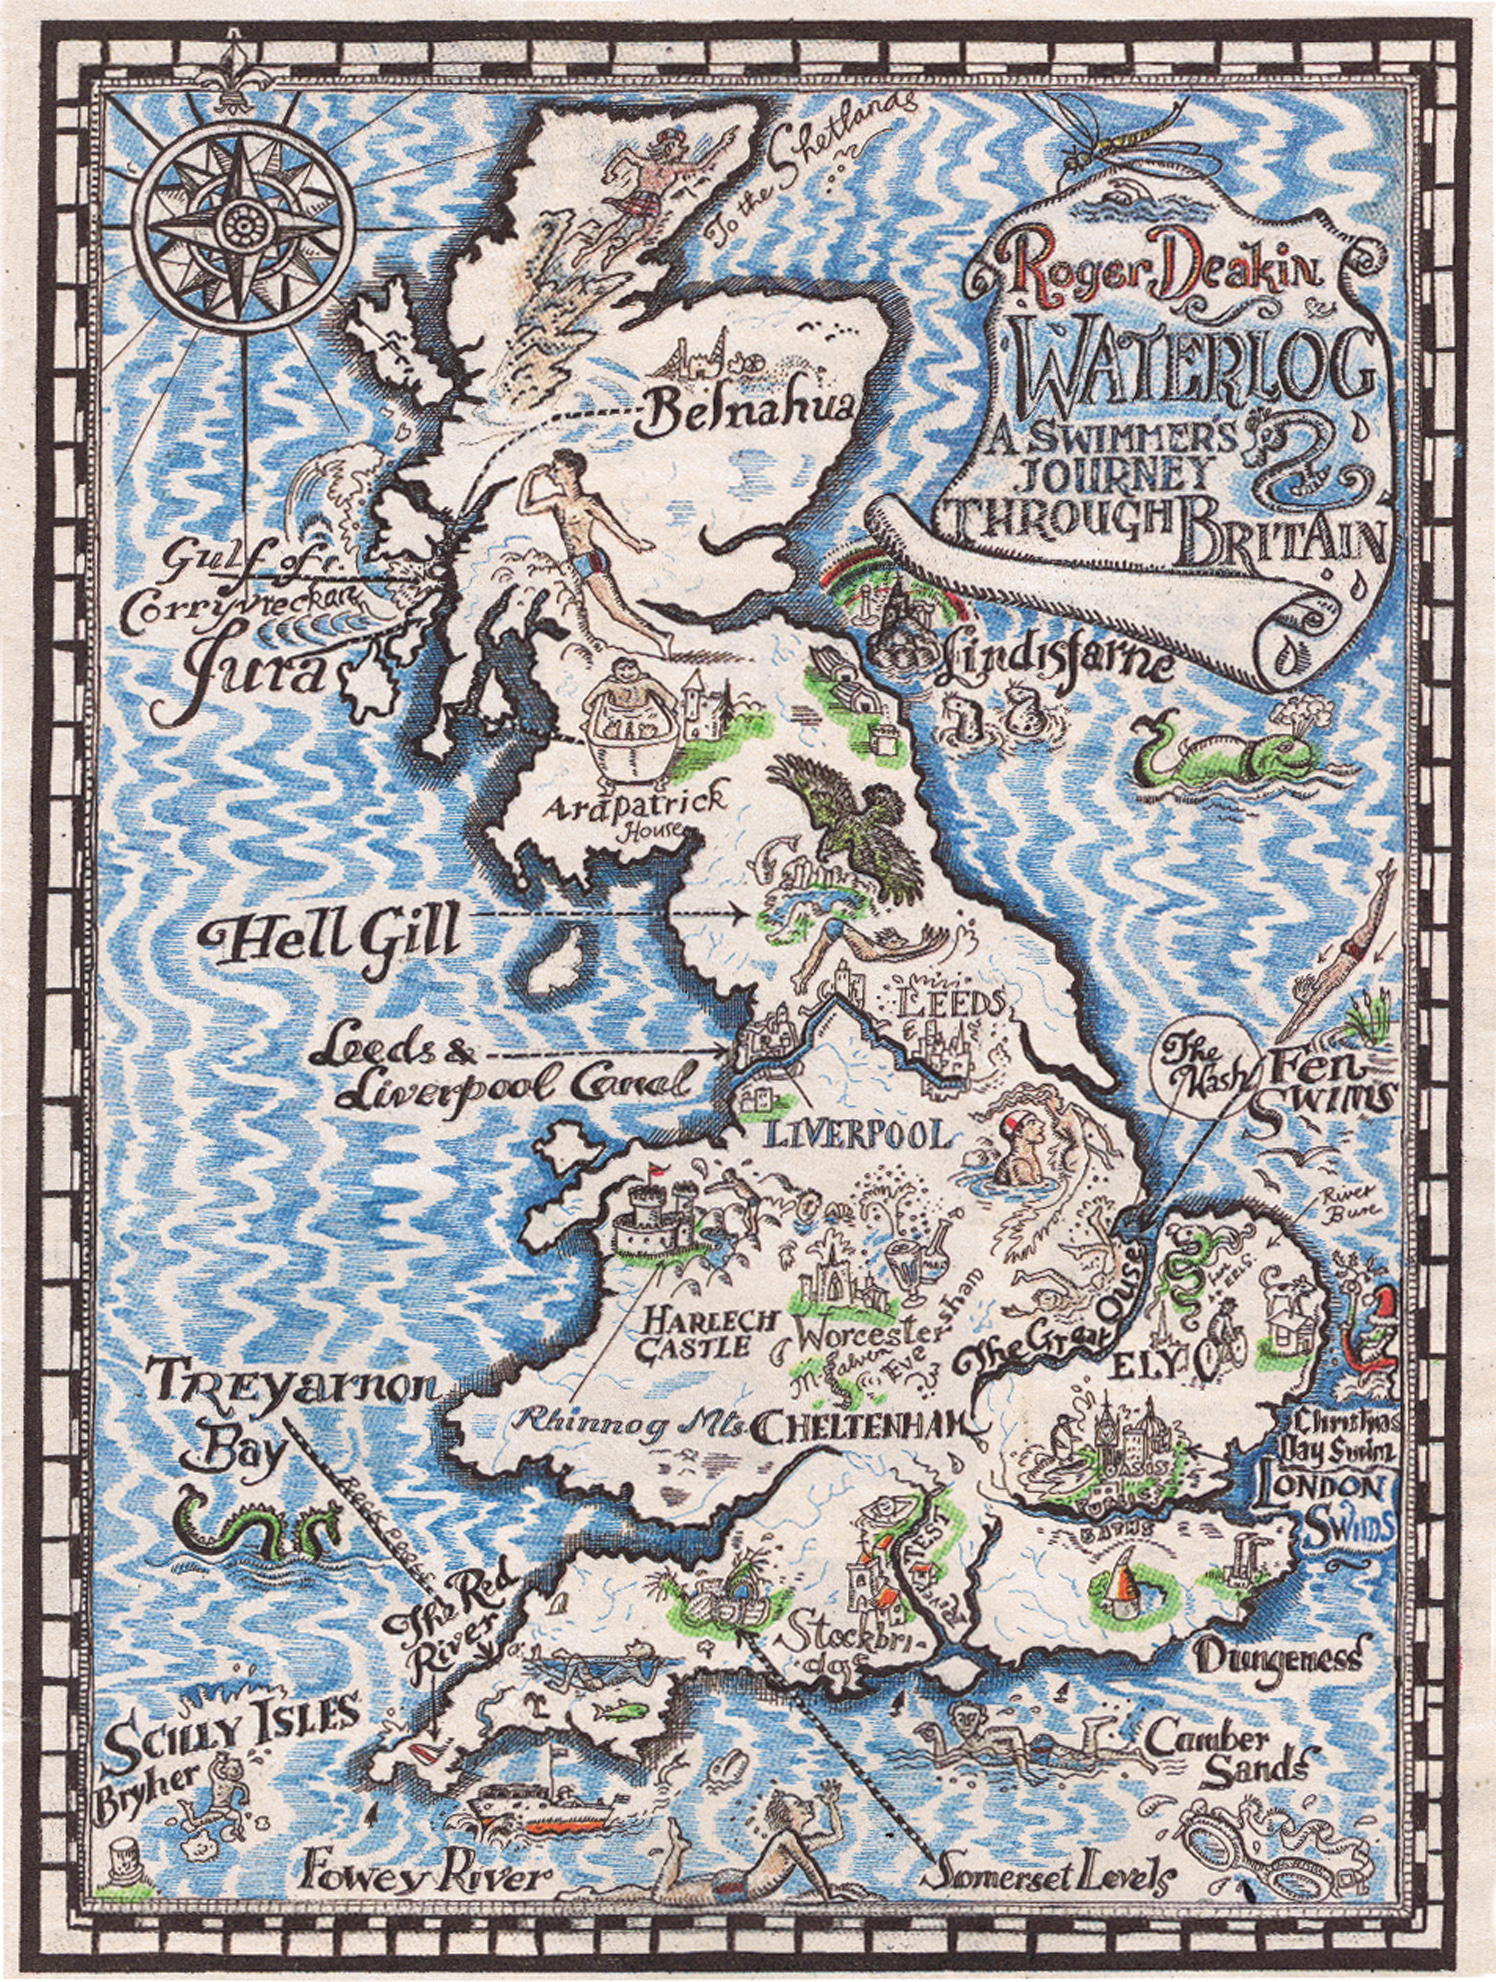 Roger Deakin Waterlog Map